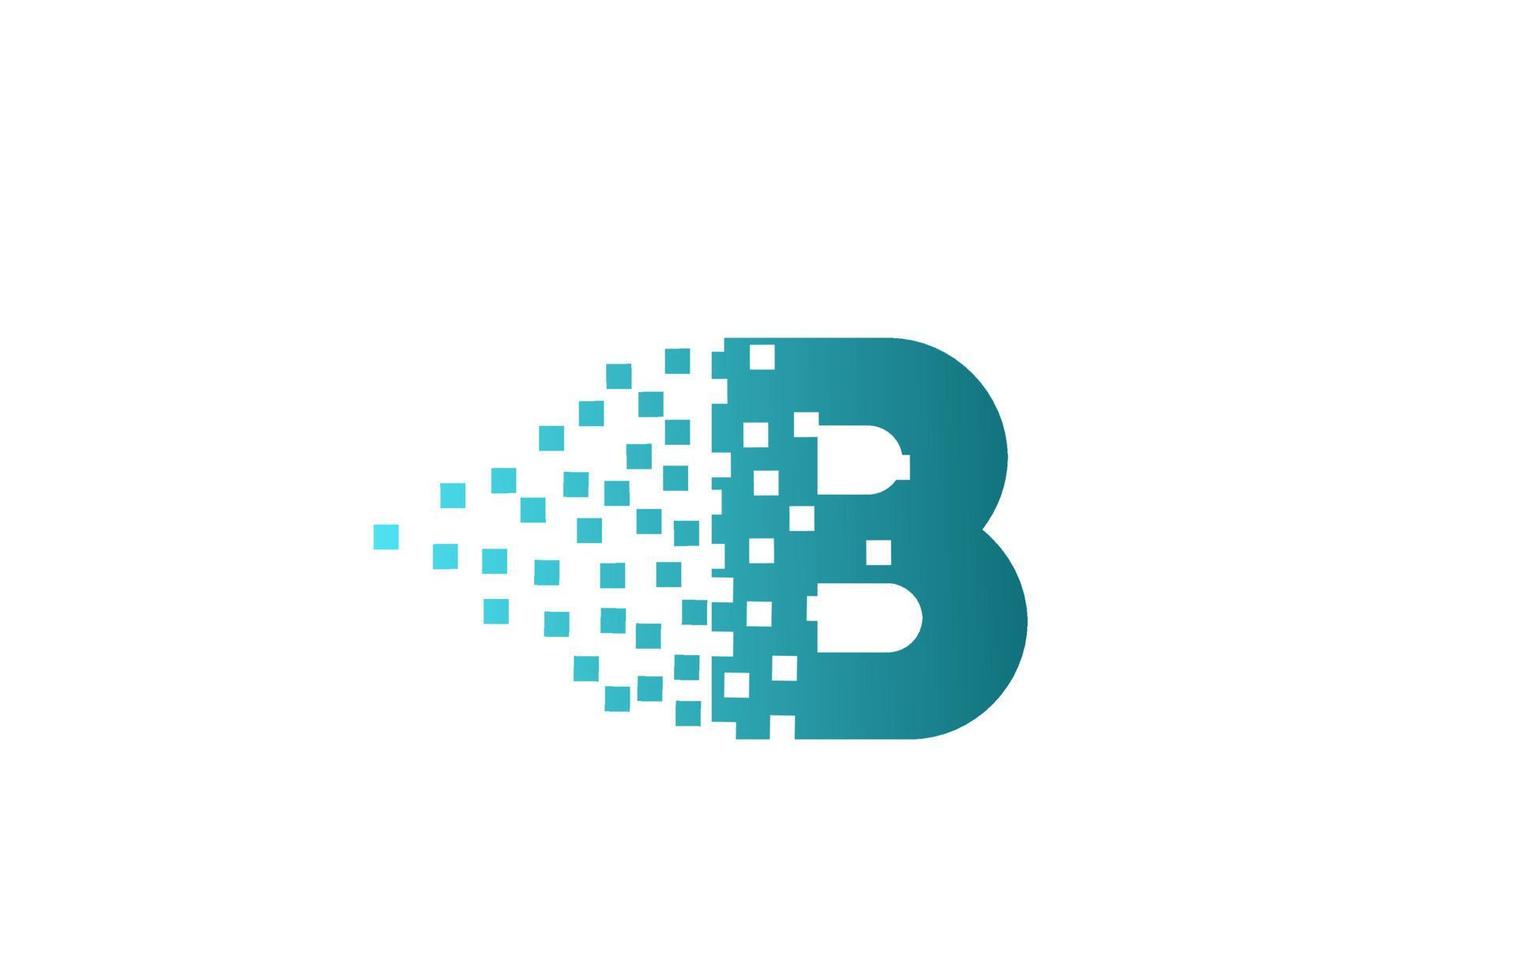 b alfabet letterpictogram logo voor bedrijf en bedrijf. groen geërodeerd pixelontwerp voor huisstijl vector